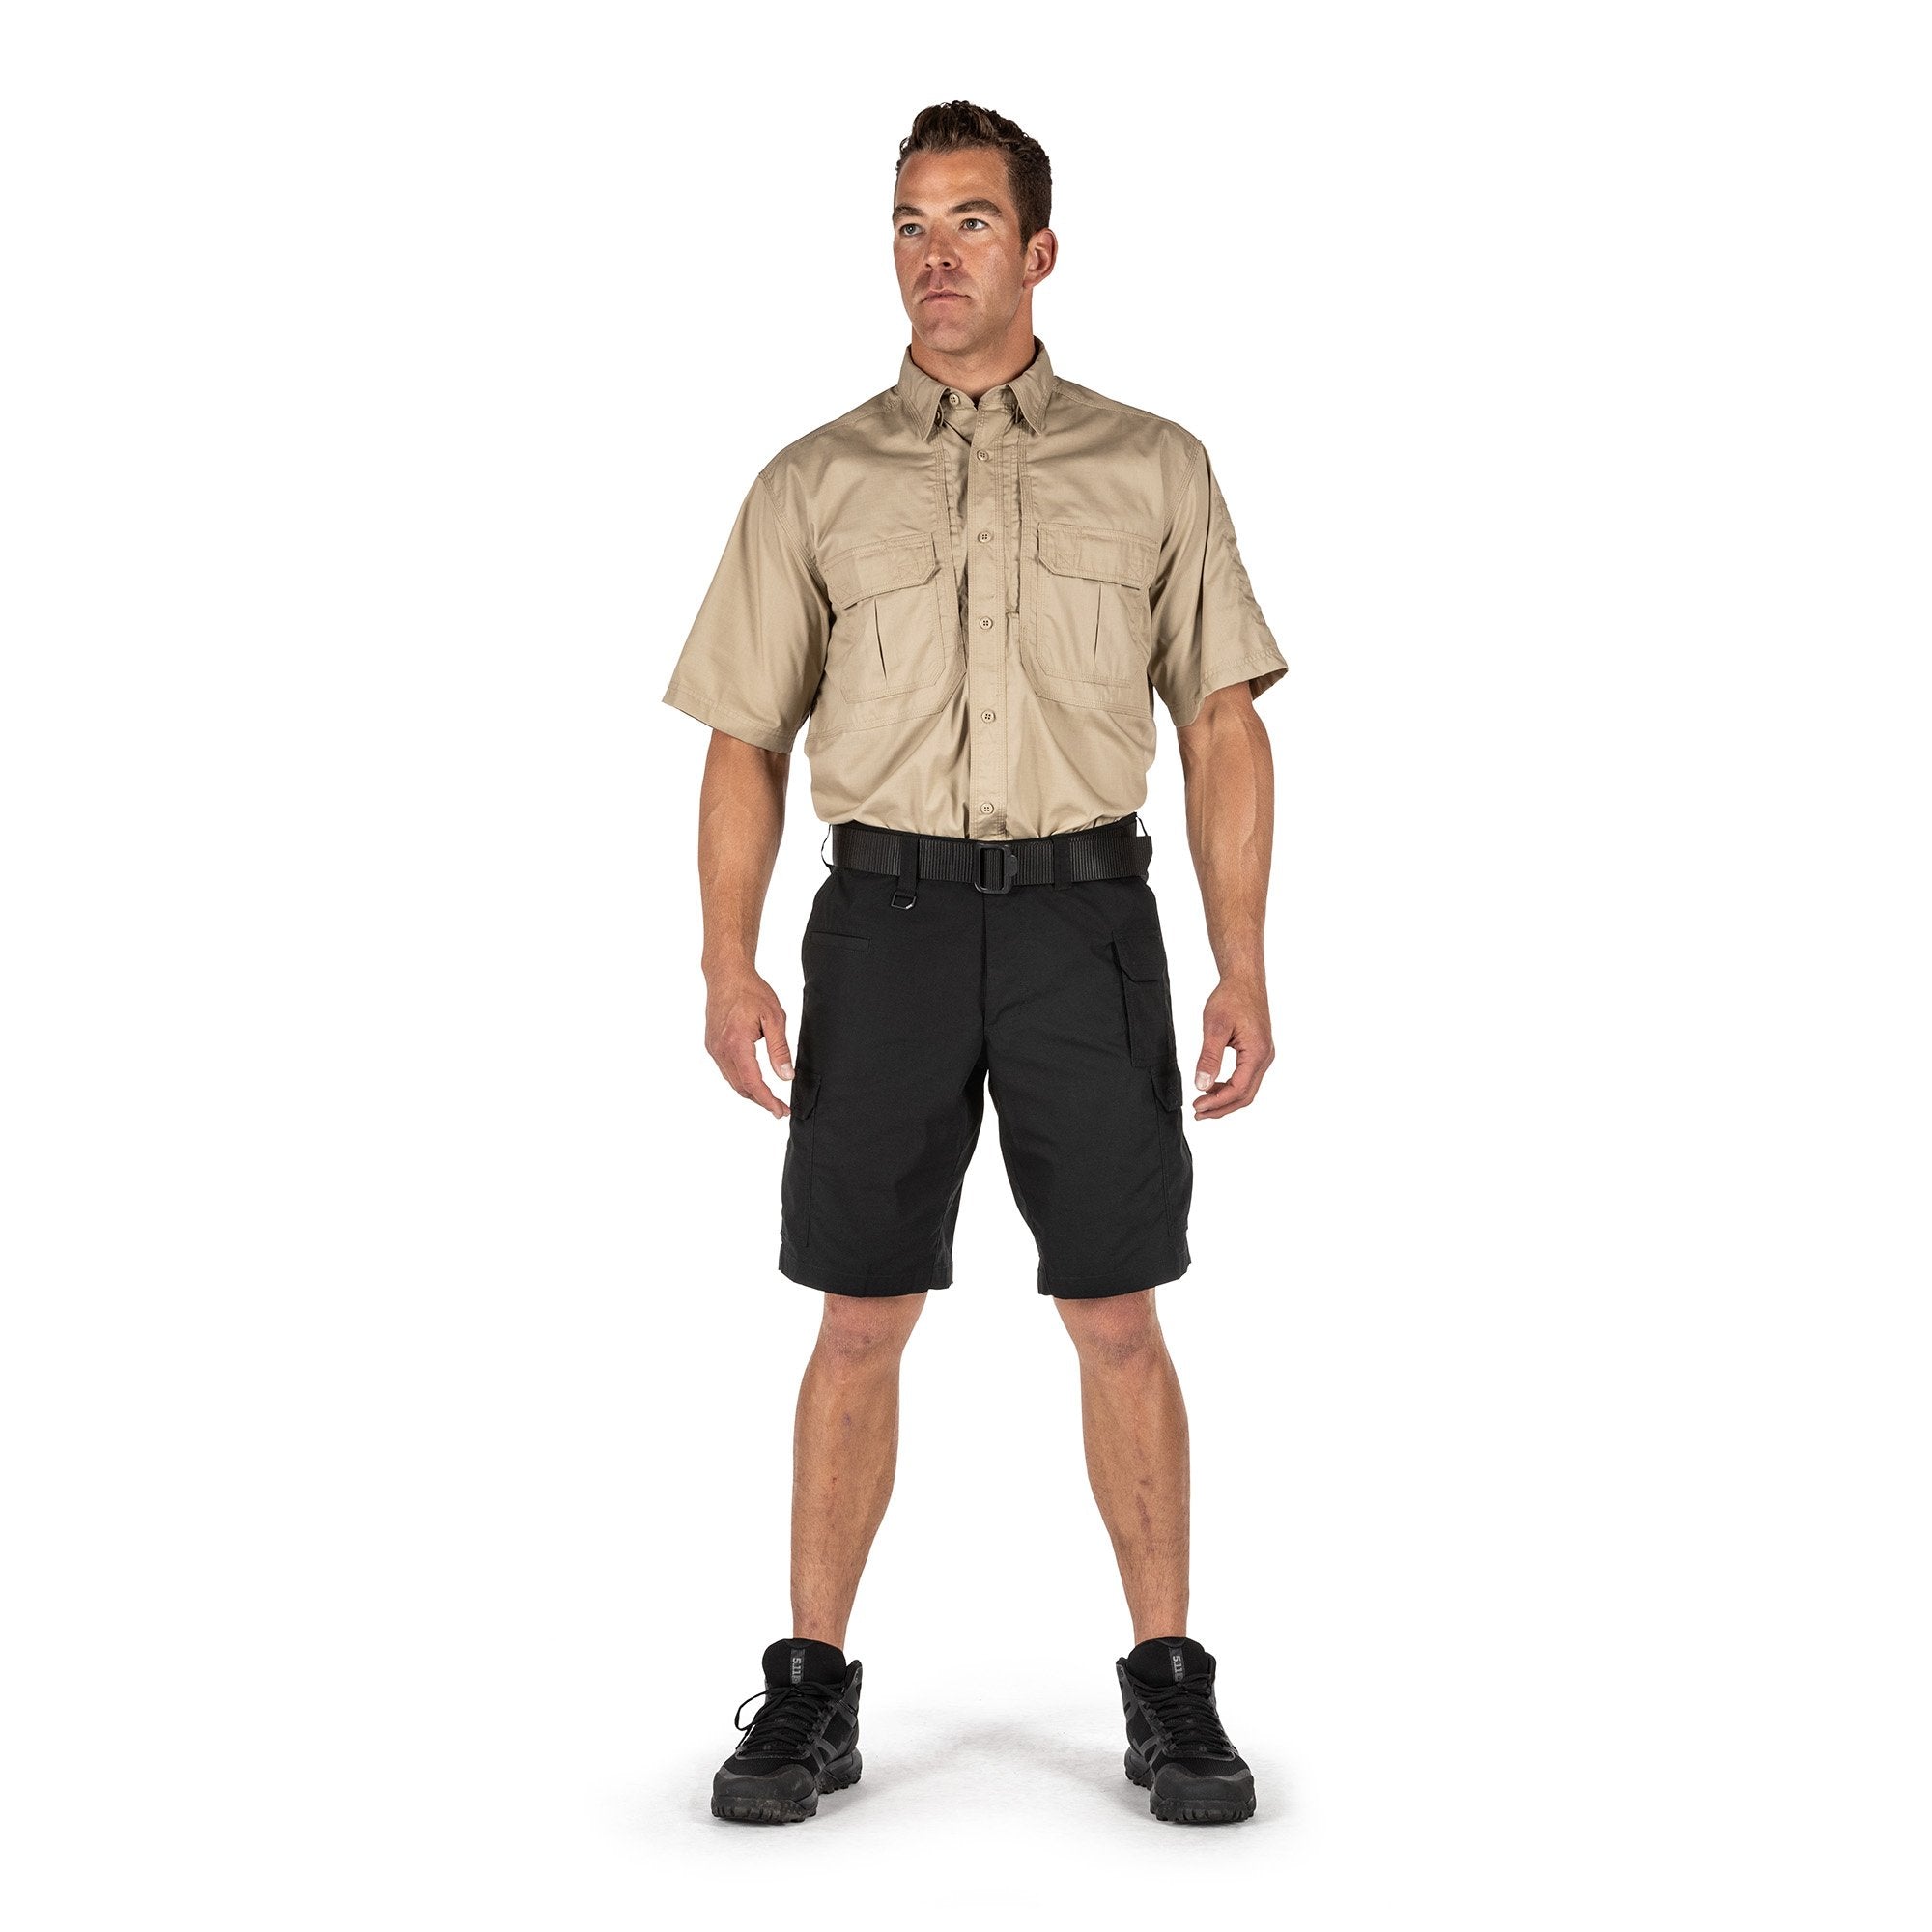 5.11 Tactical ABR Pro 11" Shorts Black Shorts 5.11 Tactical Tactical Gear Supplier Tactical Distributors Australia